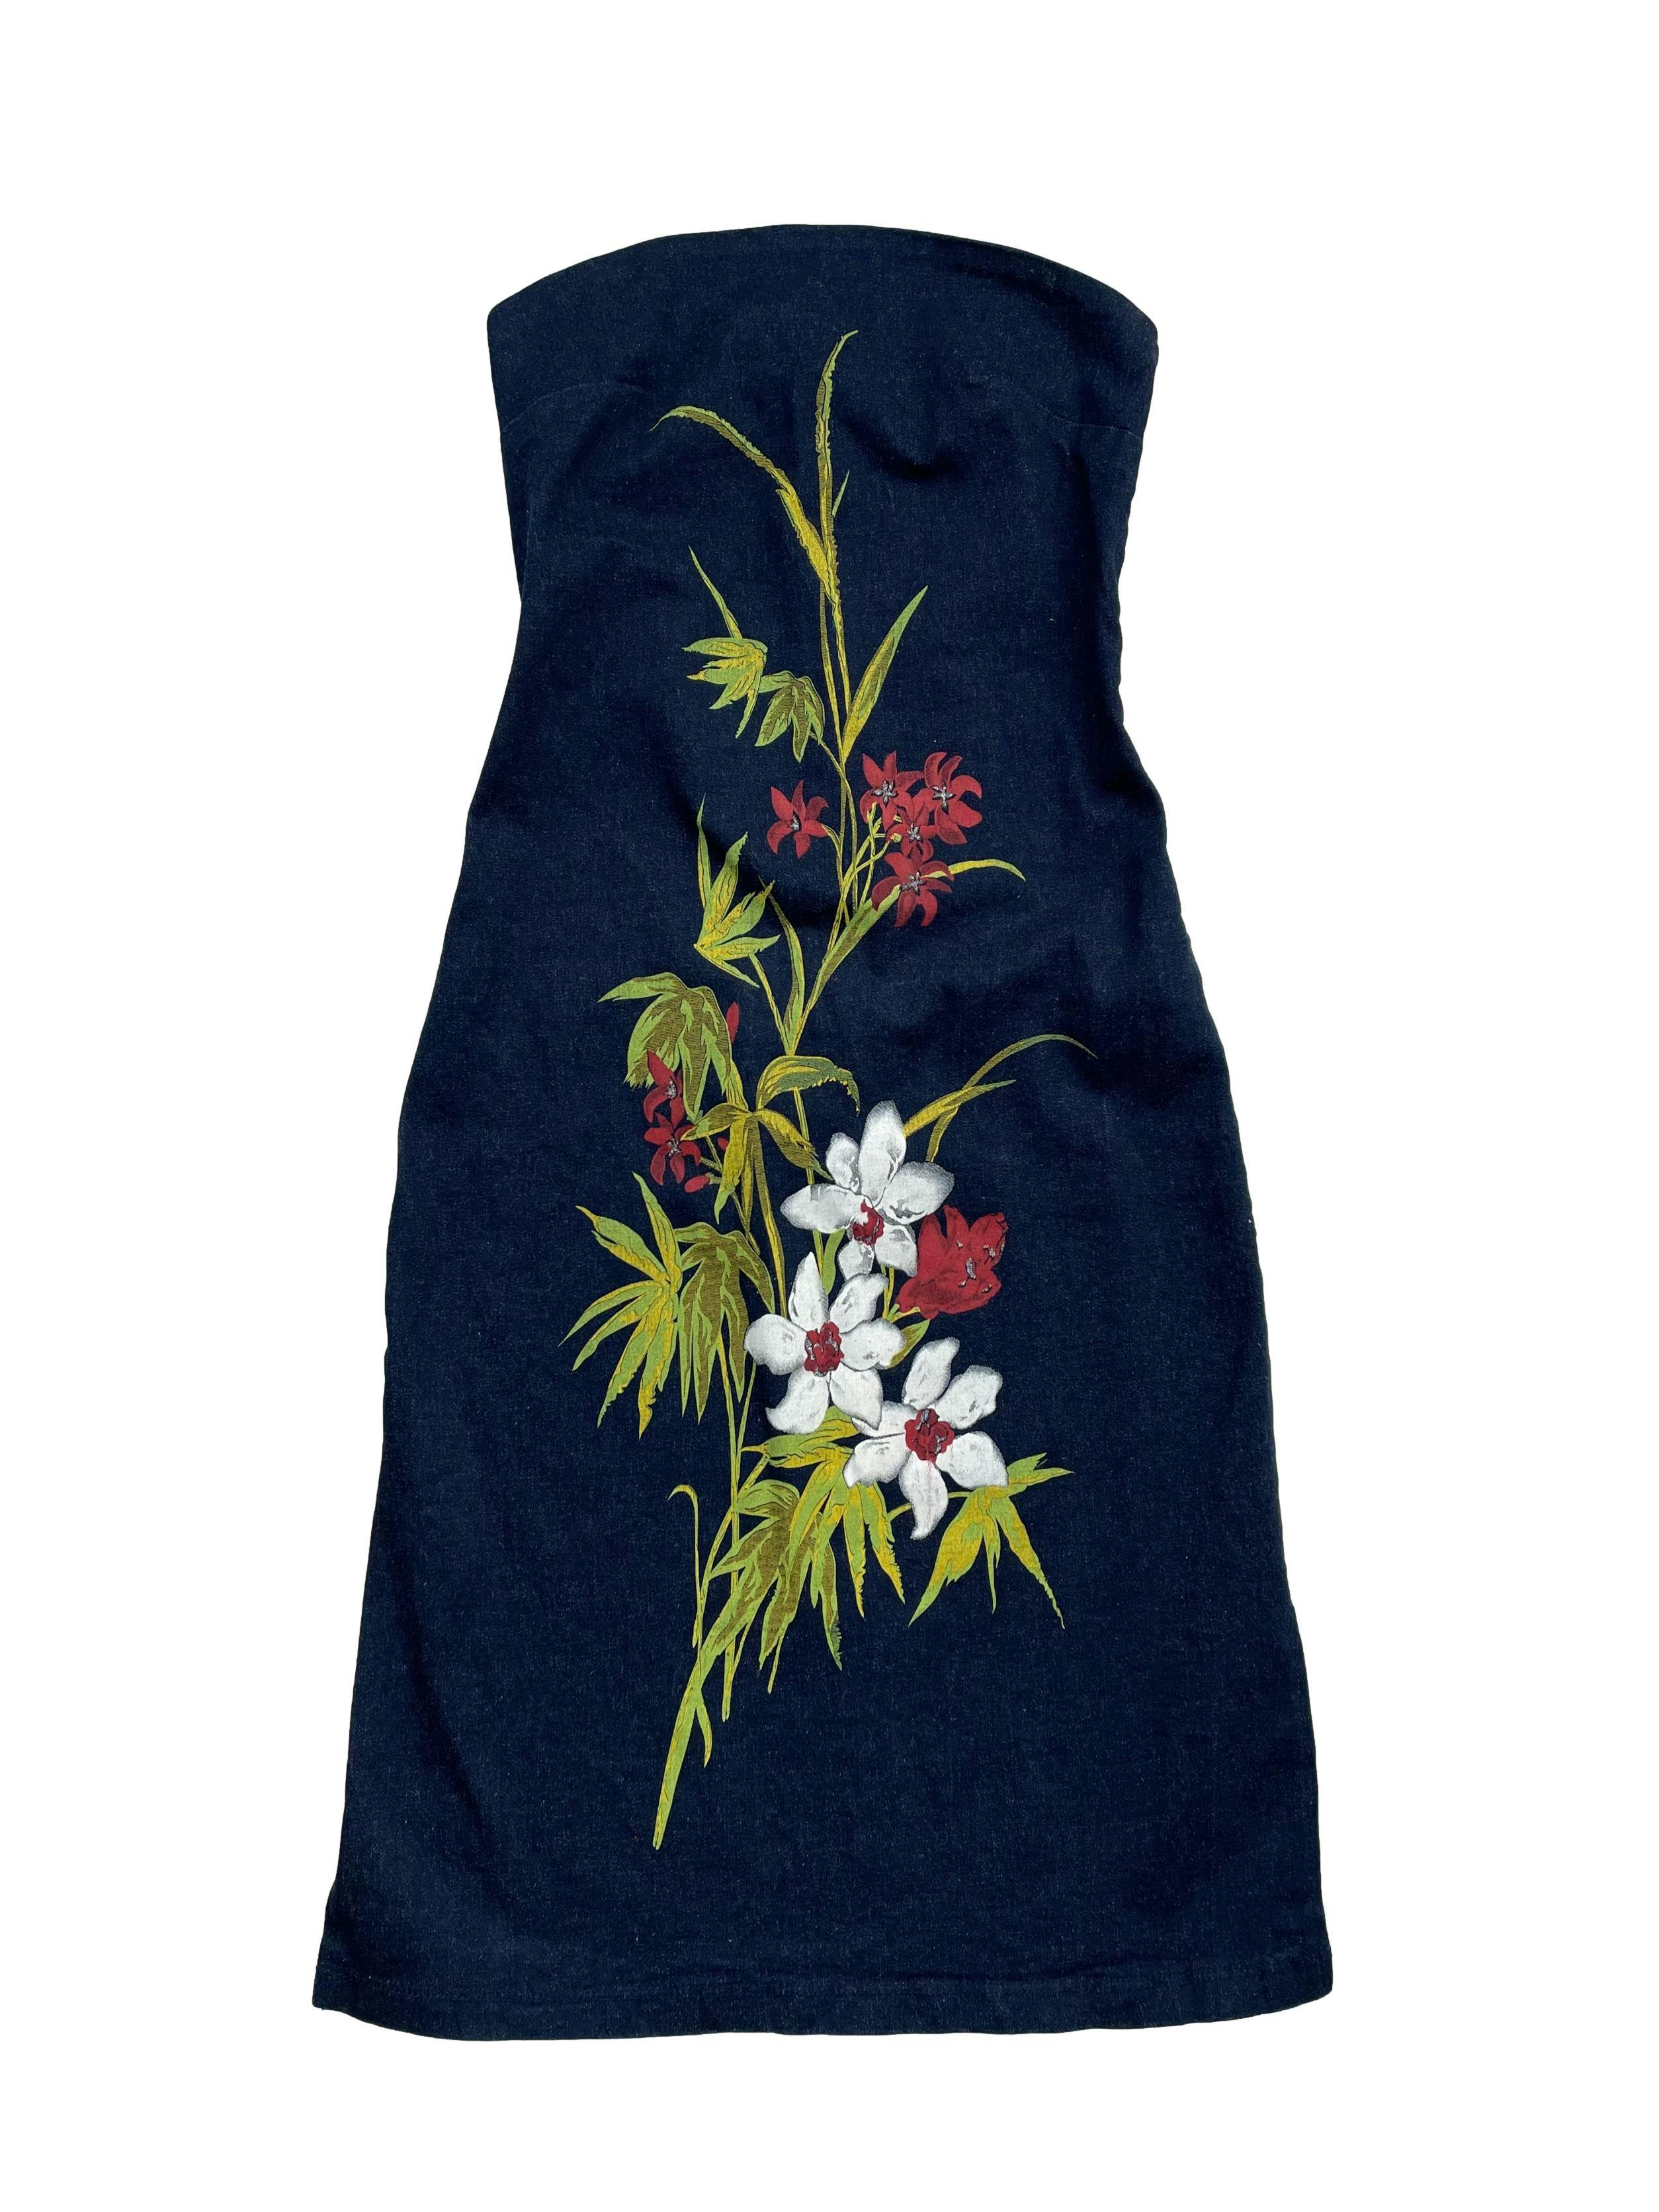 Vestido strapless Charlotte Russe denim de algodón con estampado floral, cierre en espalda y aberturas laterales. Busto 72cm sin estirar Largo 75cm.